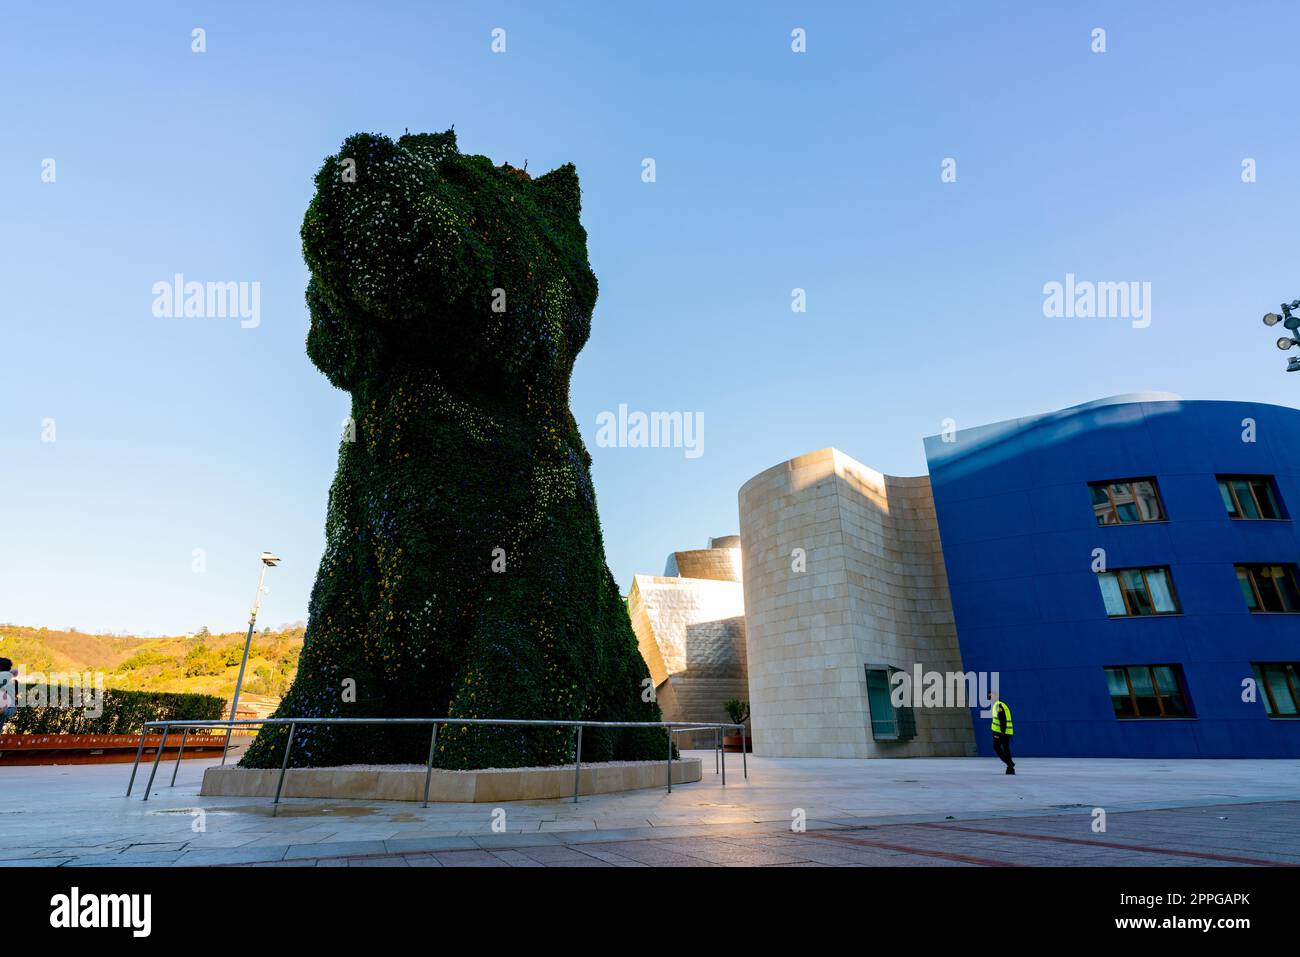 BILBAO, ESPAGNE-18 DÉCEMBRE 2021 : un chiot monte la garde au Musée Guggenheim de Bilbao, Biscaye, pays Basque, Espagne. Repères. Sculpture de chien de l'artiste Jeff Koons. La plus grande sculpture florale de worldâ€™. Banque D'Images